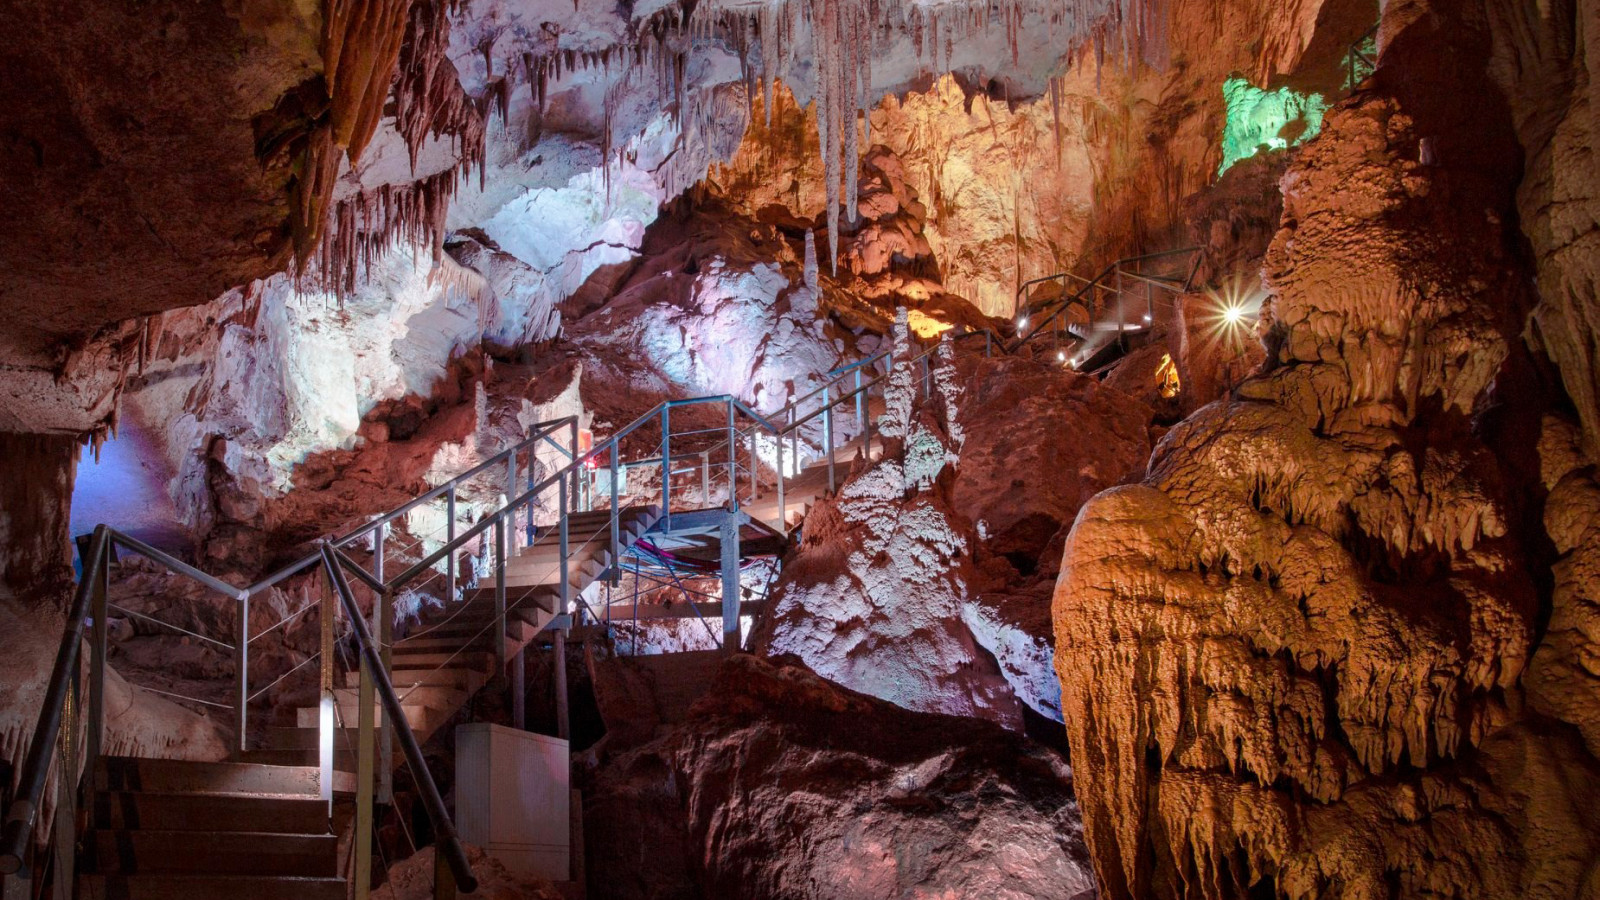 Prometheus Cave, Imereti region, Georgia